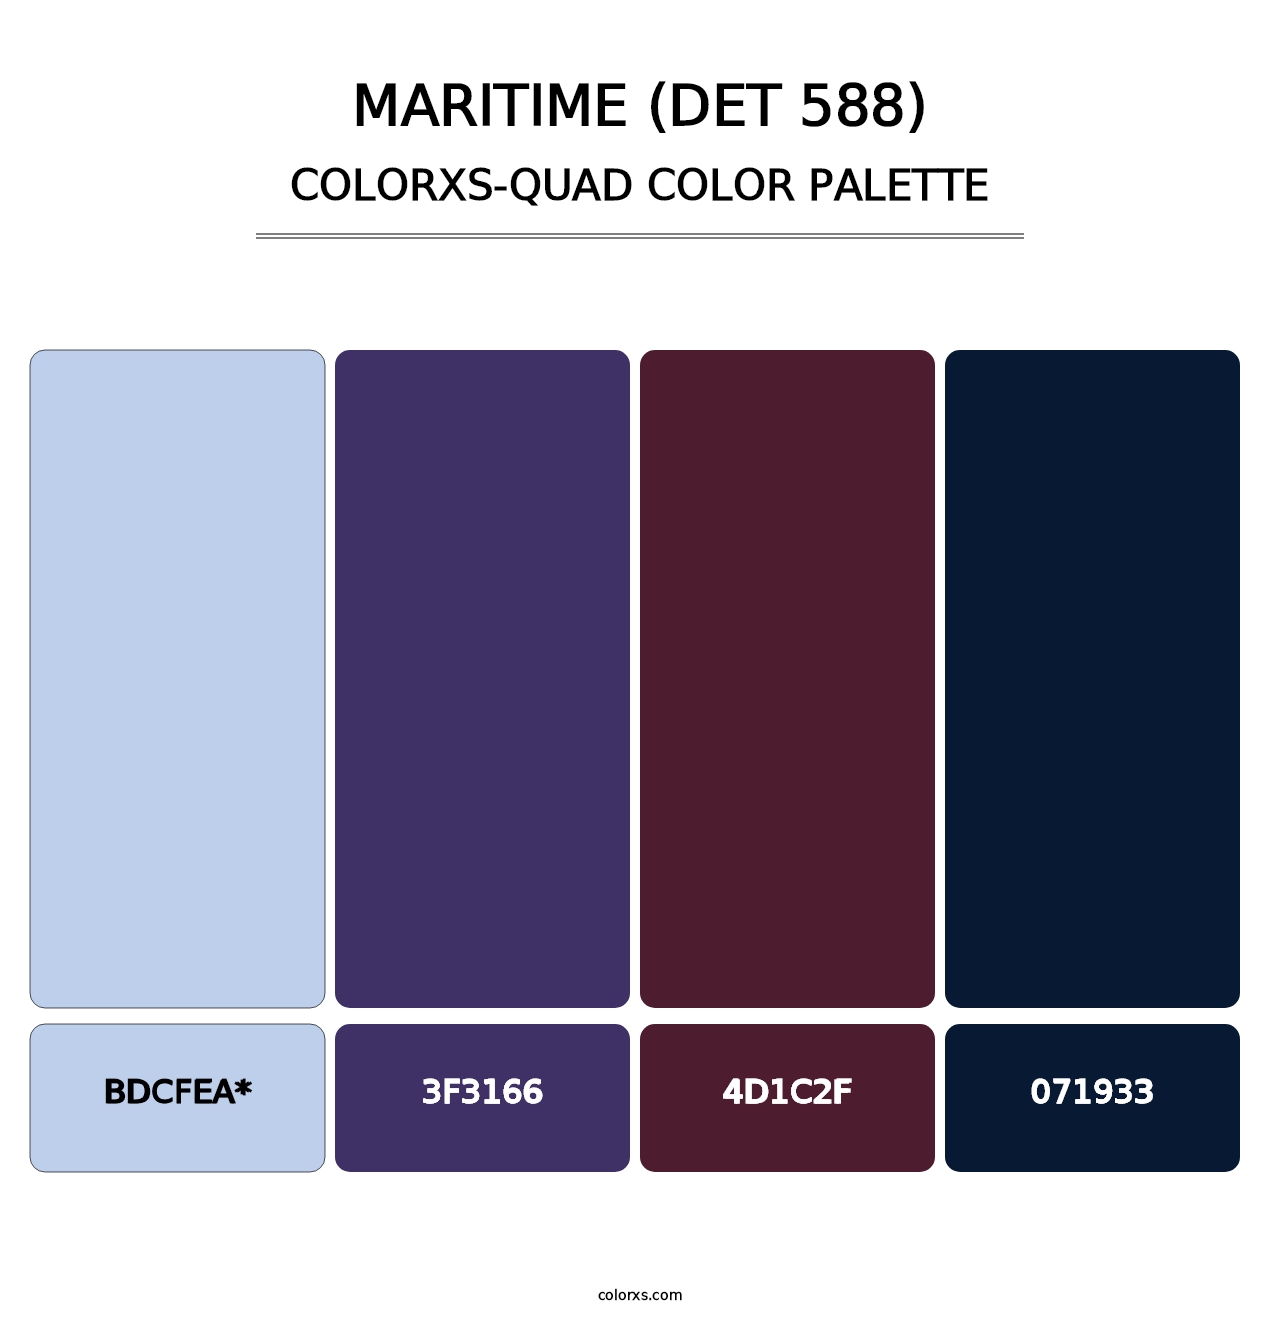 Maritime (DET 588) - Colorxs Quad Palette